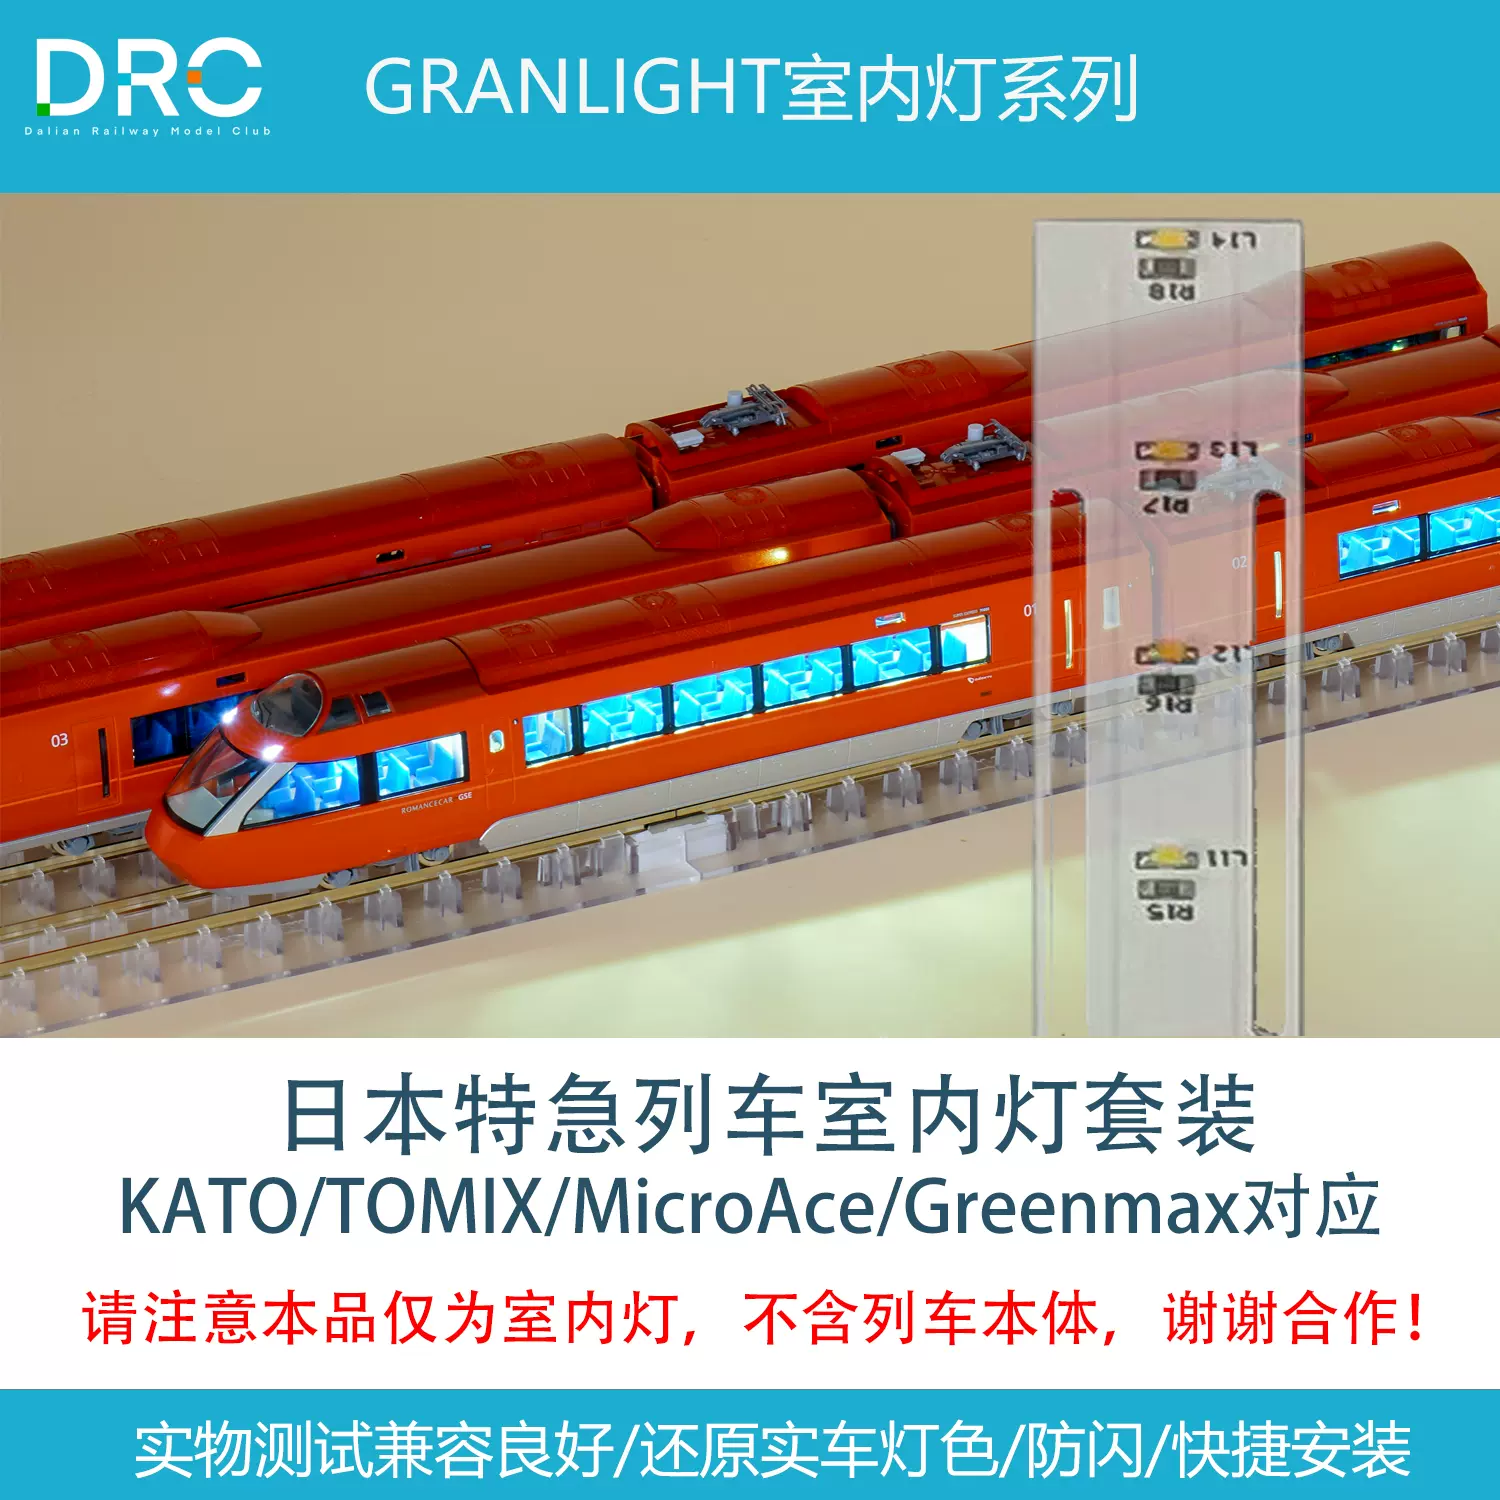 【不是車】 GRANLIGHT室內燈套裝 N比例 日本特急列車 KATO TOMIX-Taobao